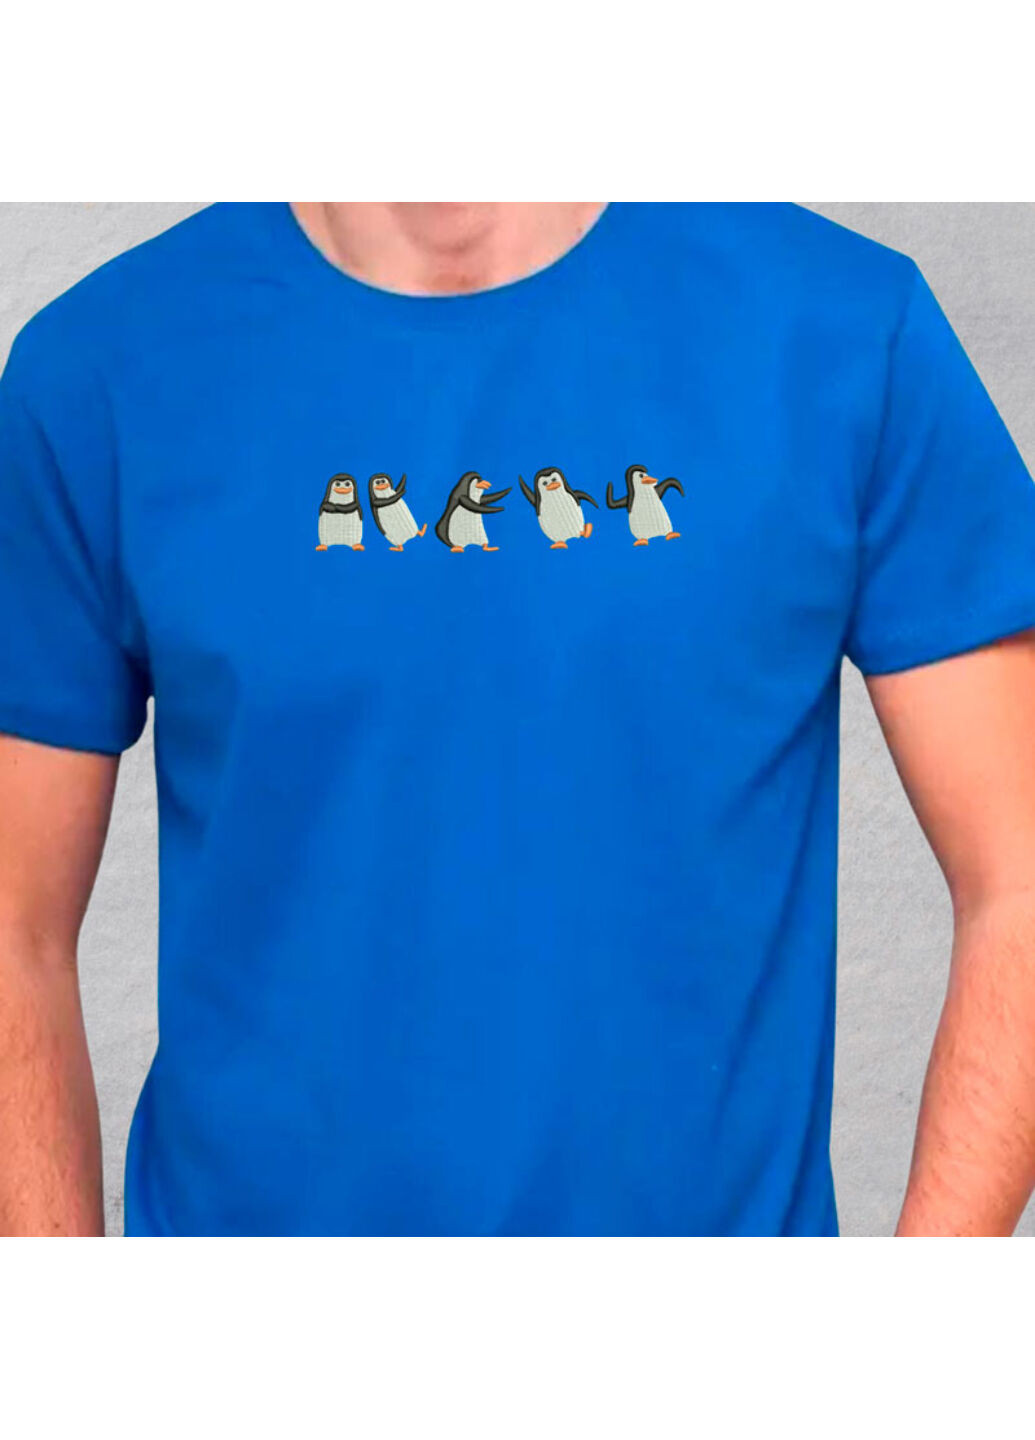 Синяя футболка с вышивкой пингвинов 01-3 мужская синий 2xl No Brand